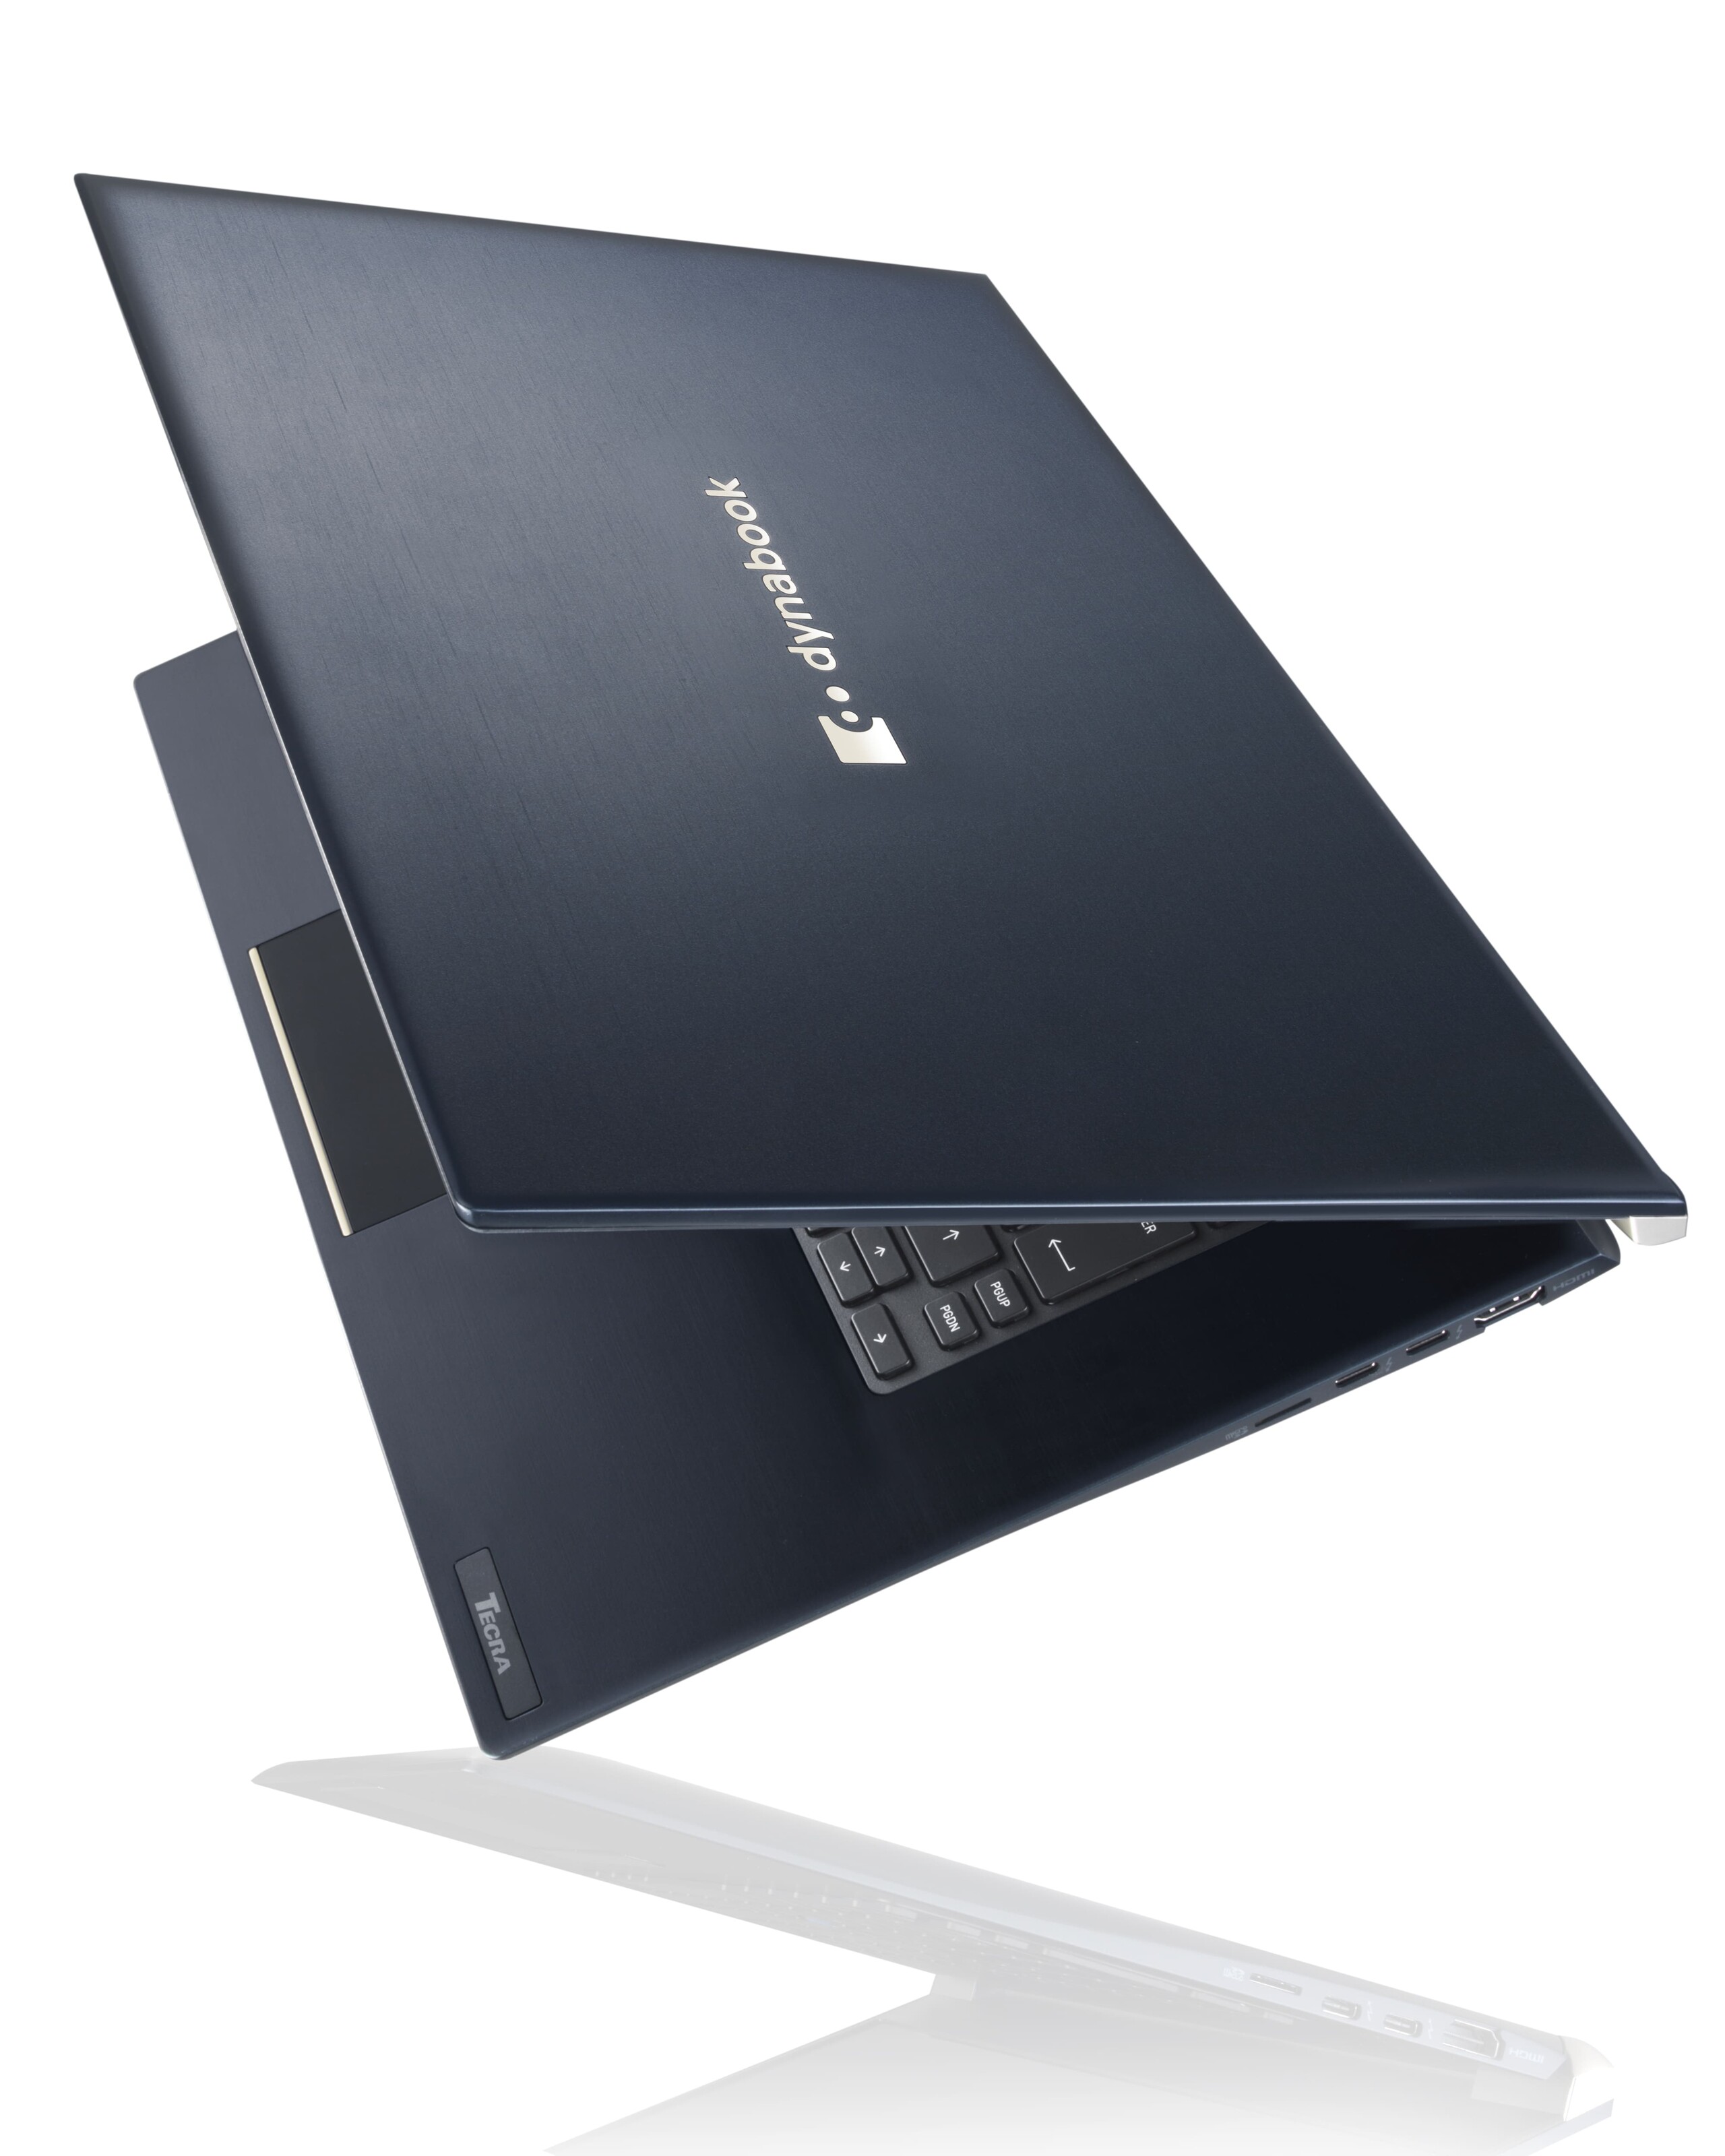 Dynabook Laptop A light Ultrabook with endurance - NotebookCheck.net Reviews